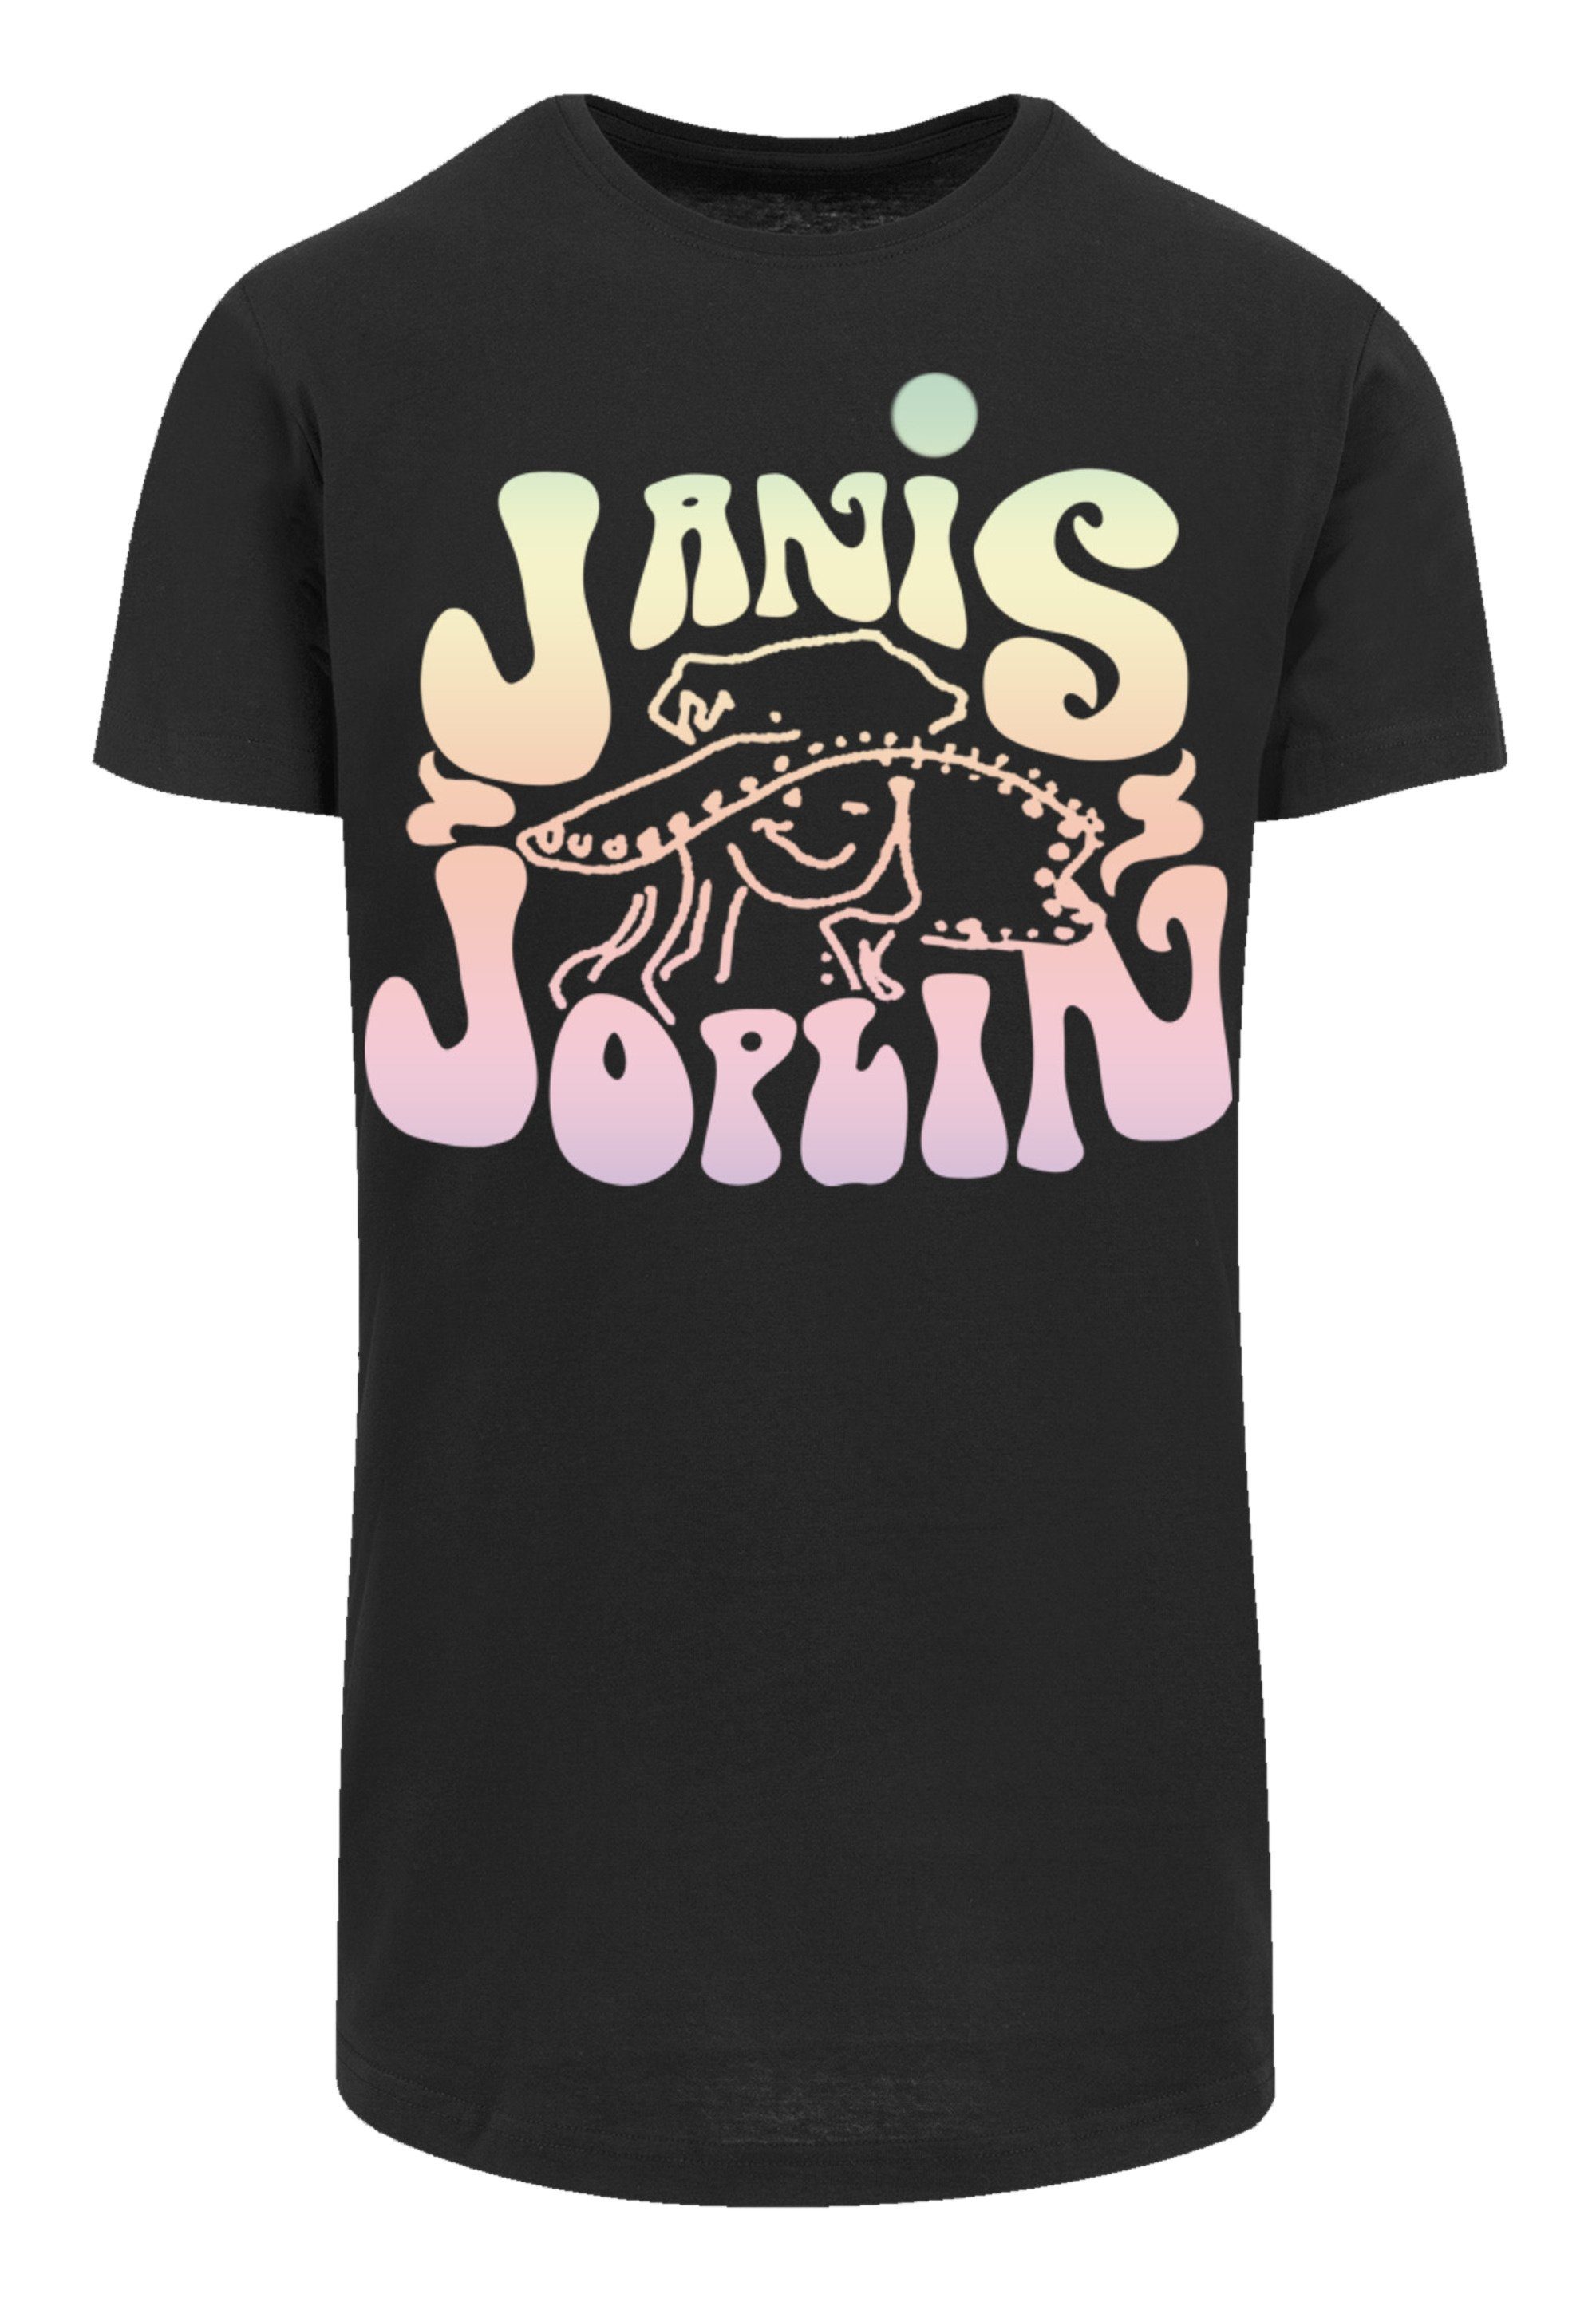 Pastel Das T-Shirt und 180 Größe SIZE groß PLUS M Model Print, Logo cm F4NT4STIC Janis trägt Joplin ist